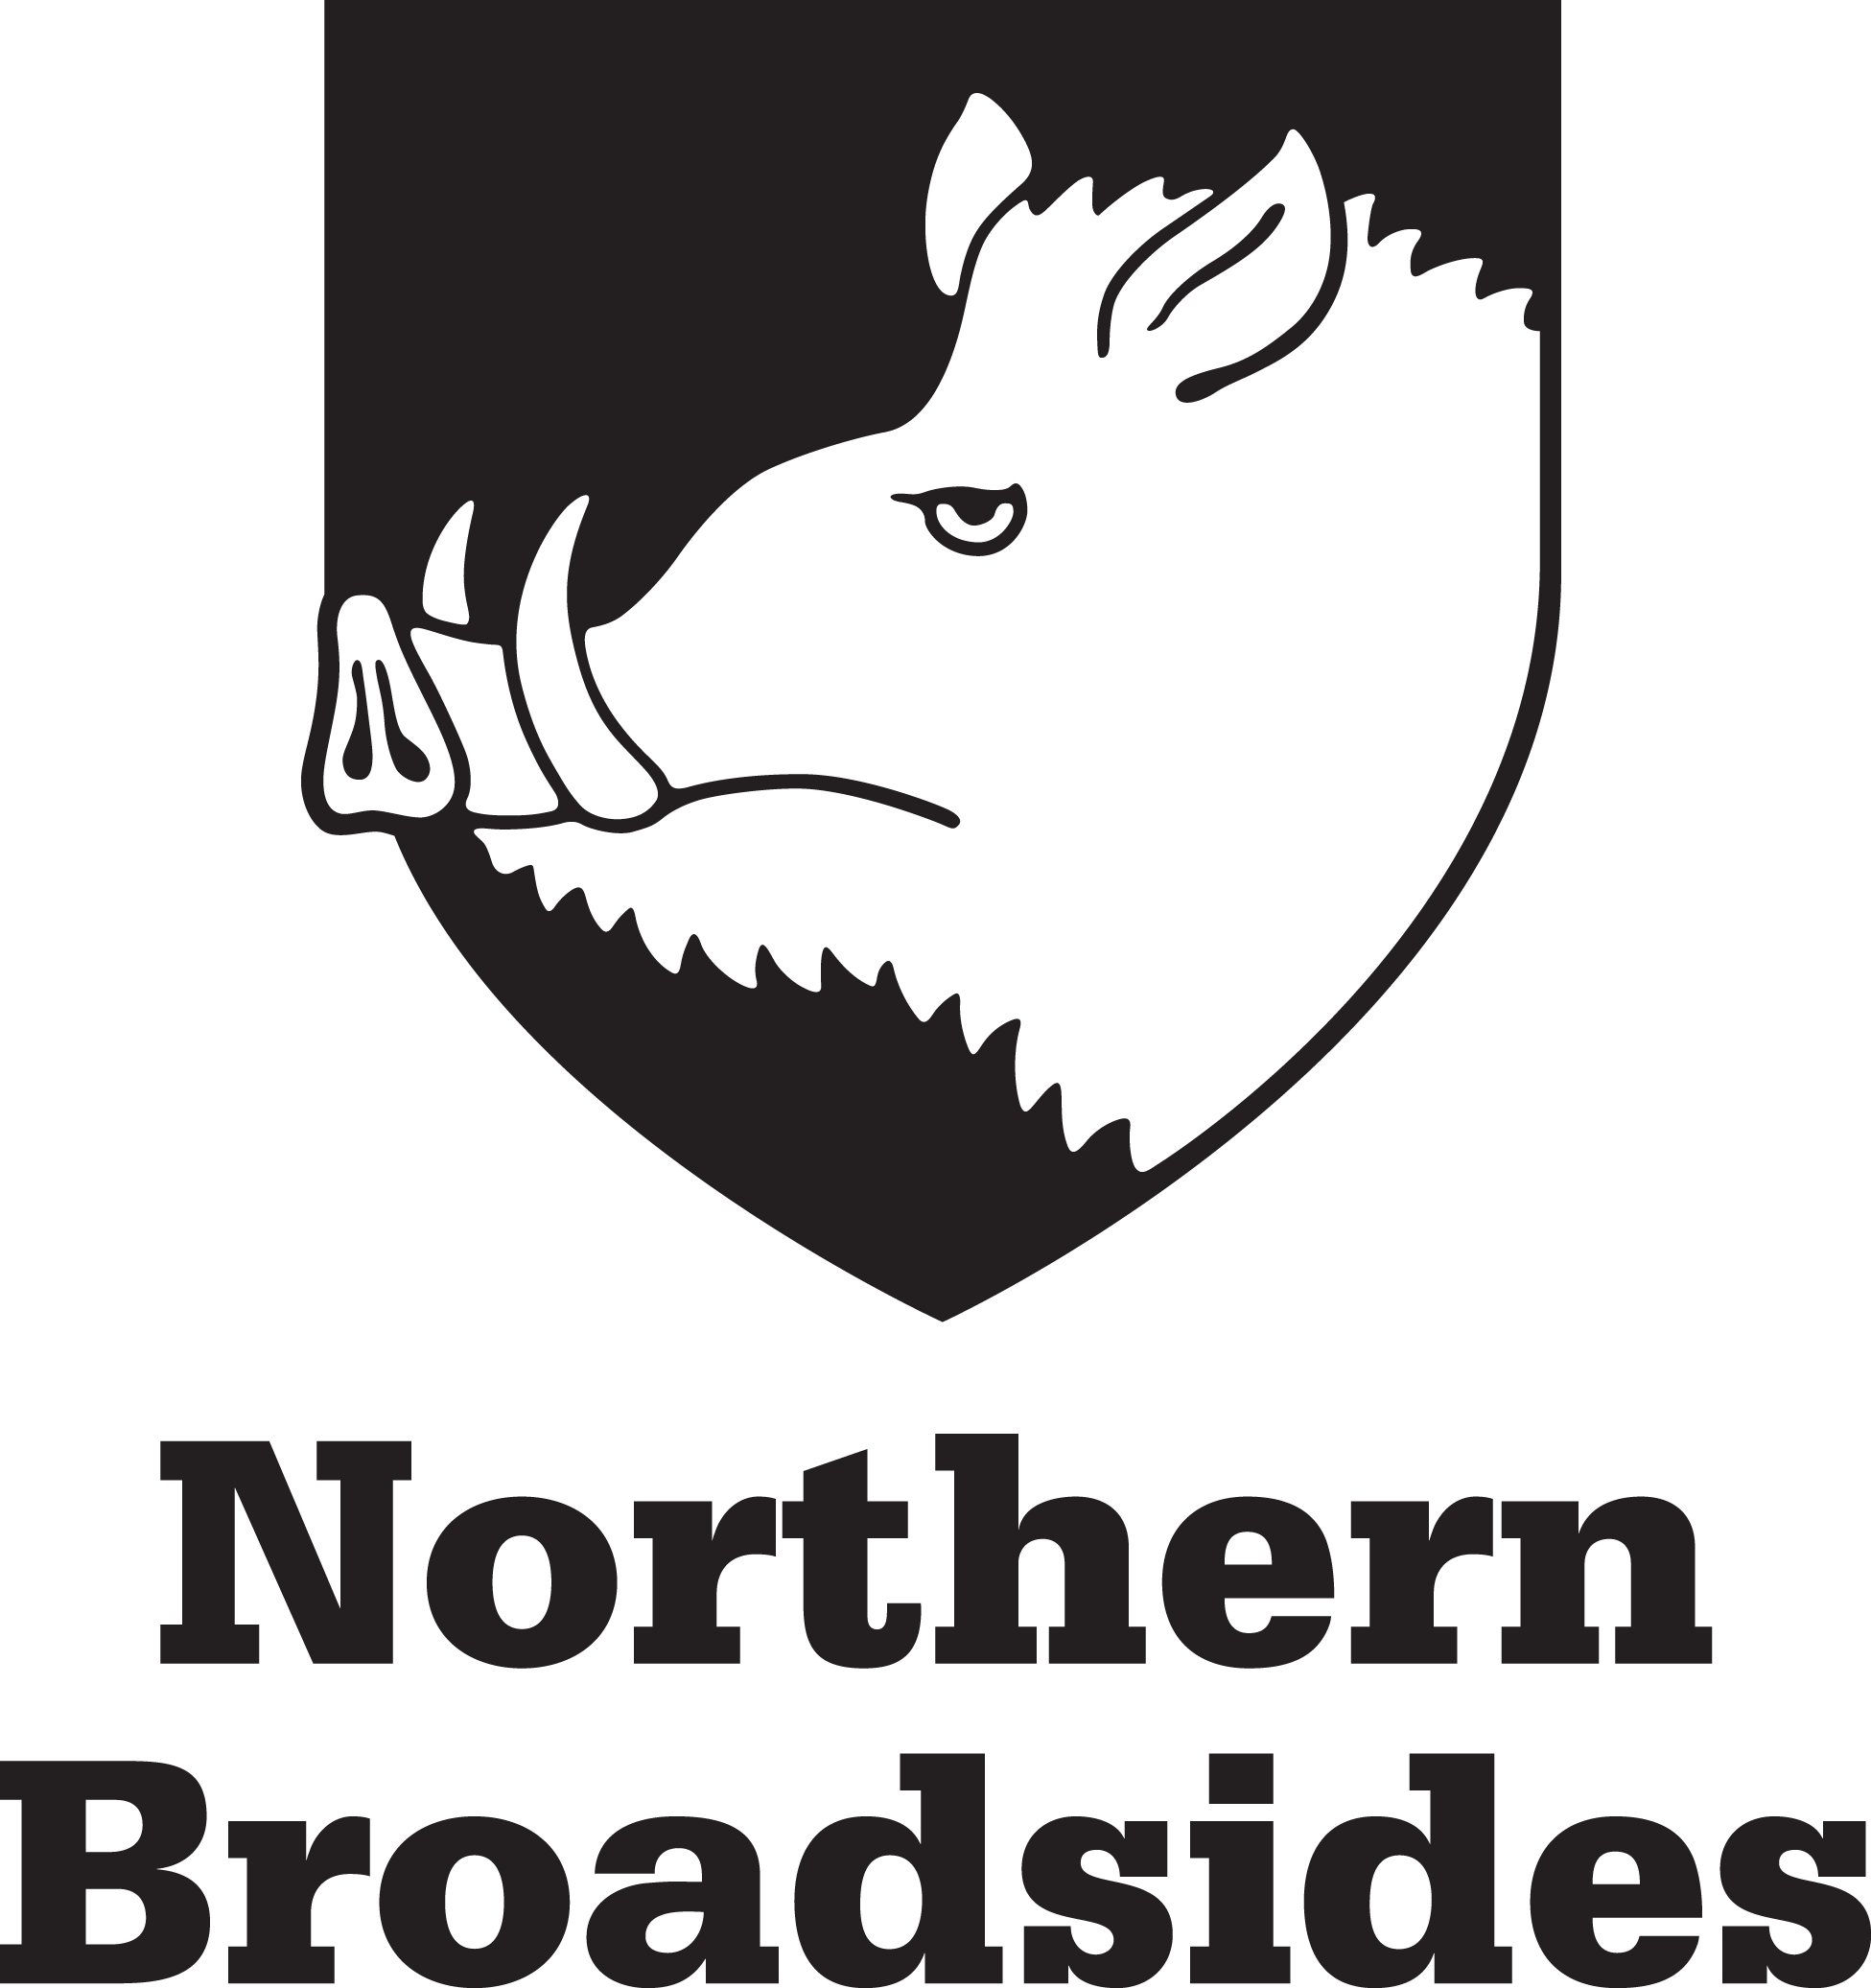 Norther_Broadsides_black_full